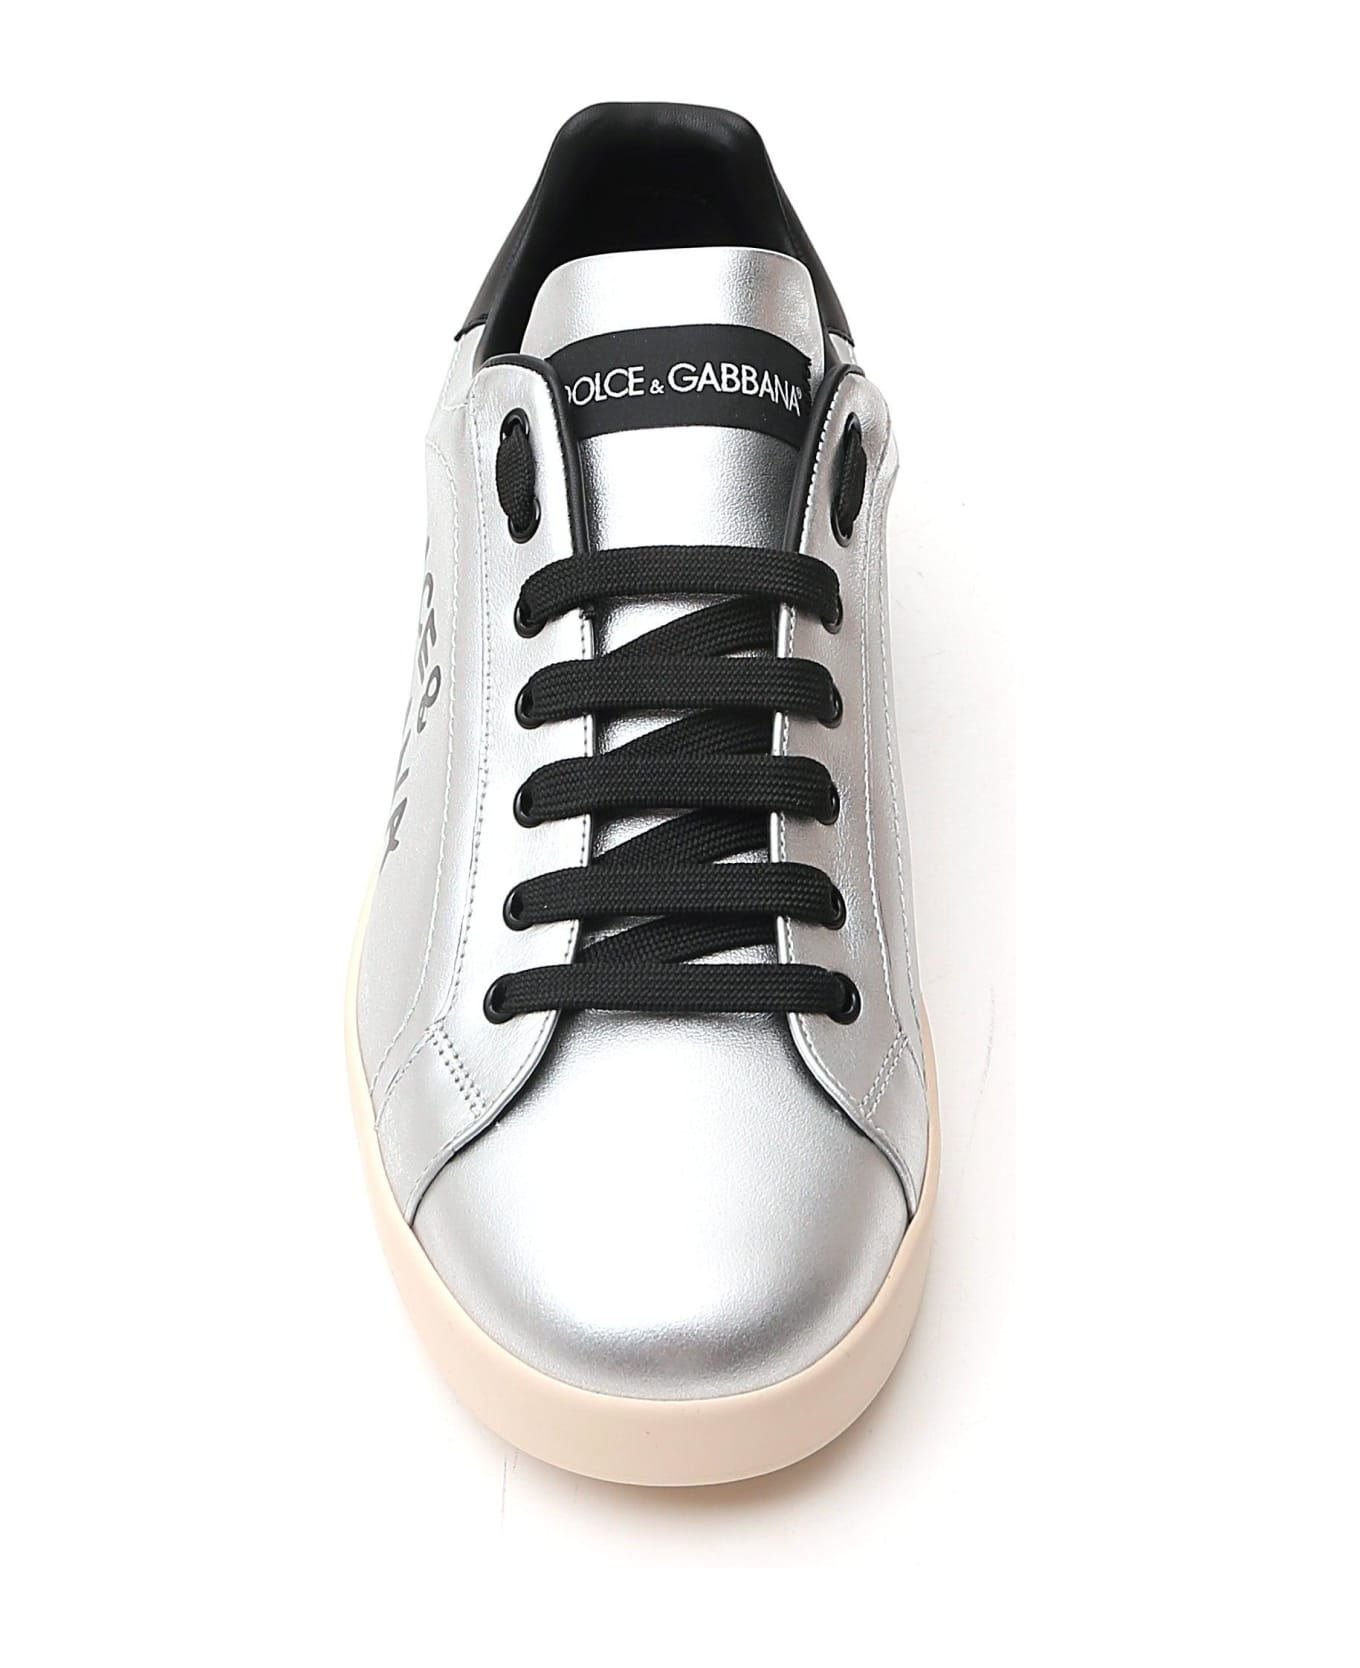 Dolce & Gabbana Portofino Sneakers - Argento